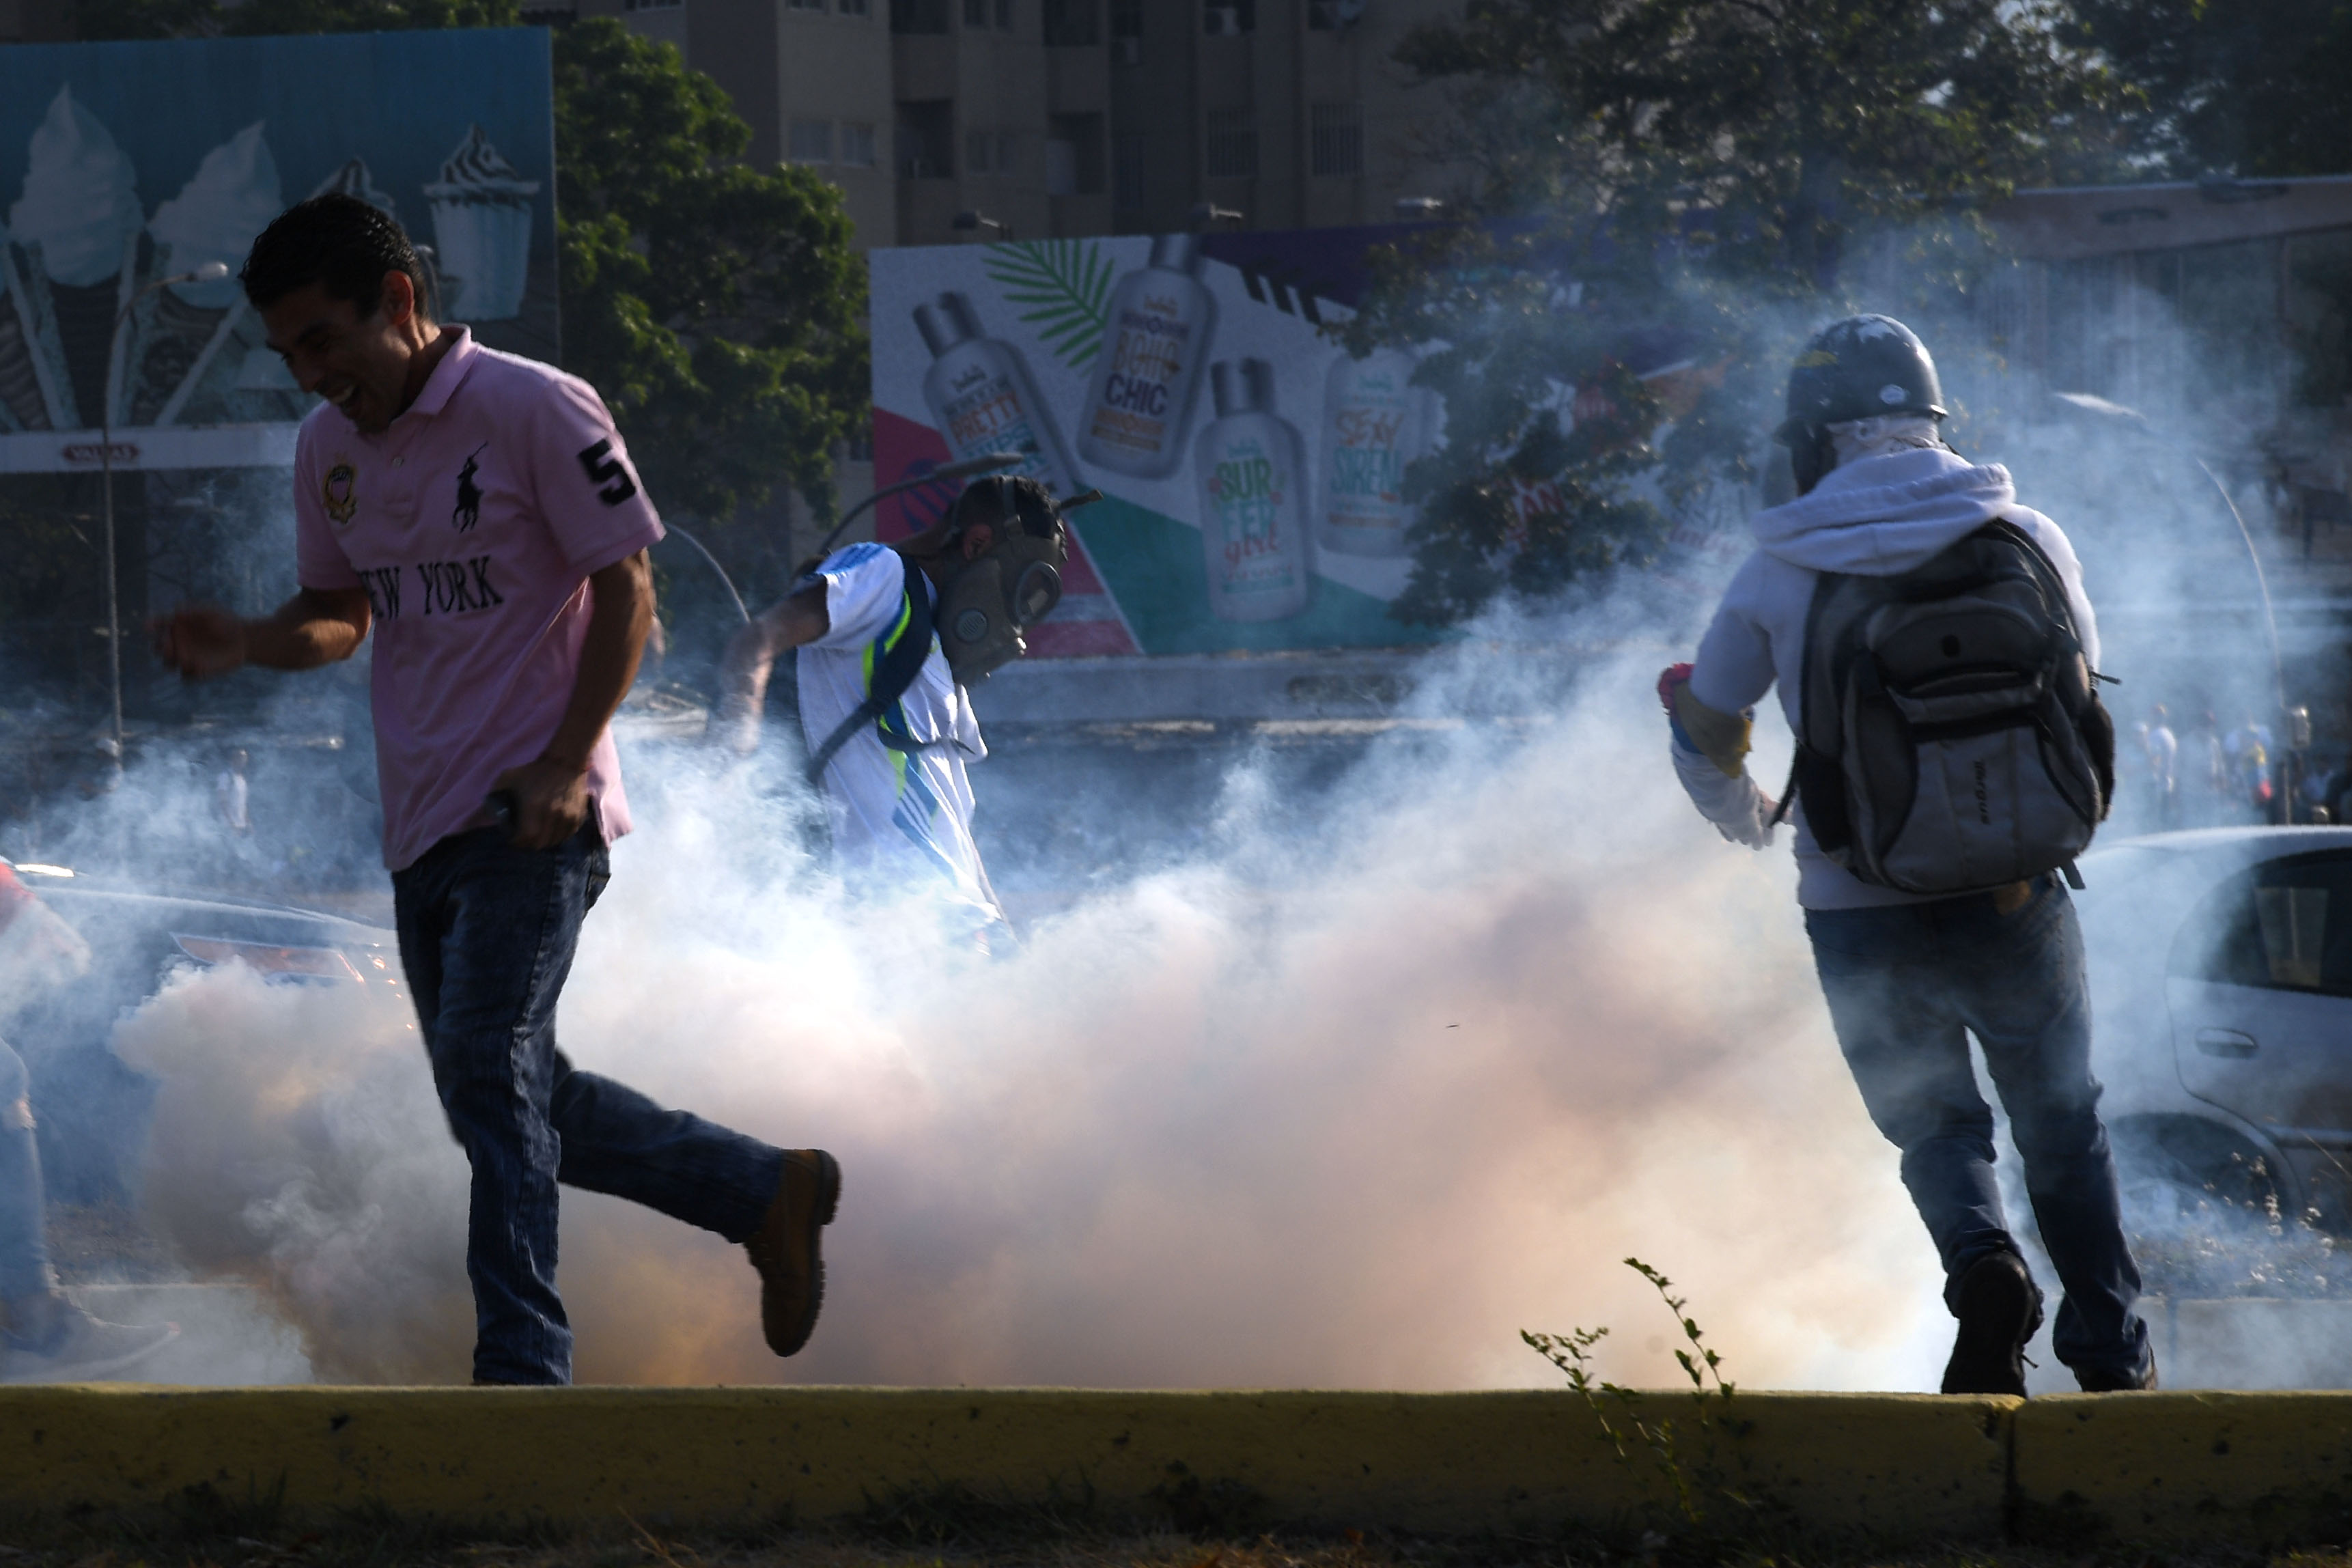 Tensión se vive en Venezuela luego de la liberación del opositor Leopoldo López y el llamado de Juan Guaidó para salir a las calles, mientras el gobierno de Nicolás Maduro también moviliza simpatizantes. (Foto Prensa Libre: AFP)